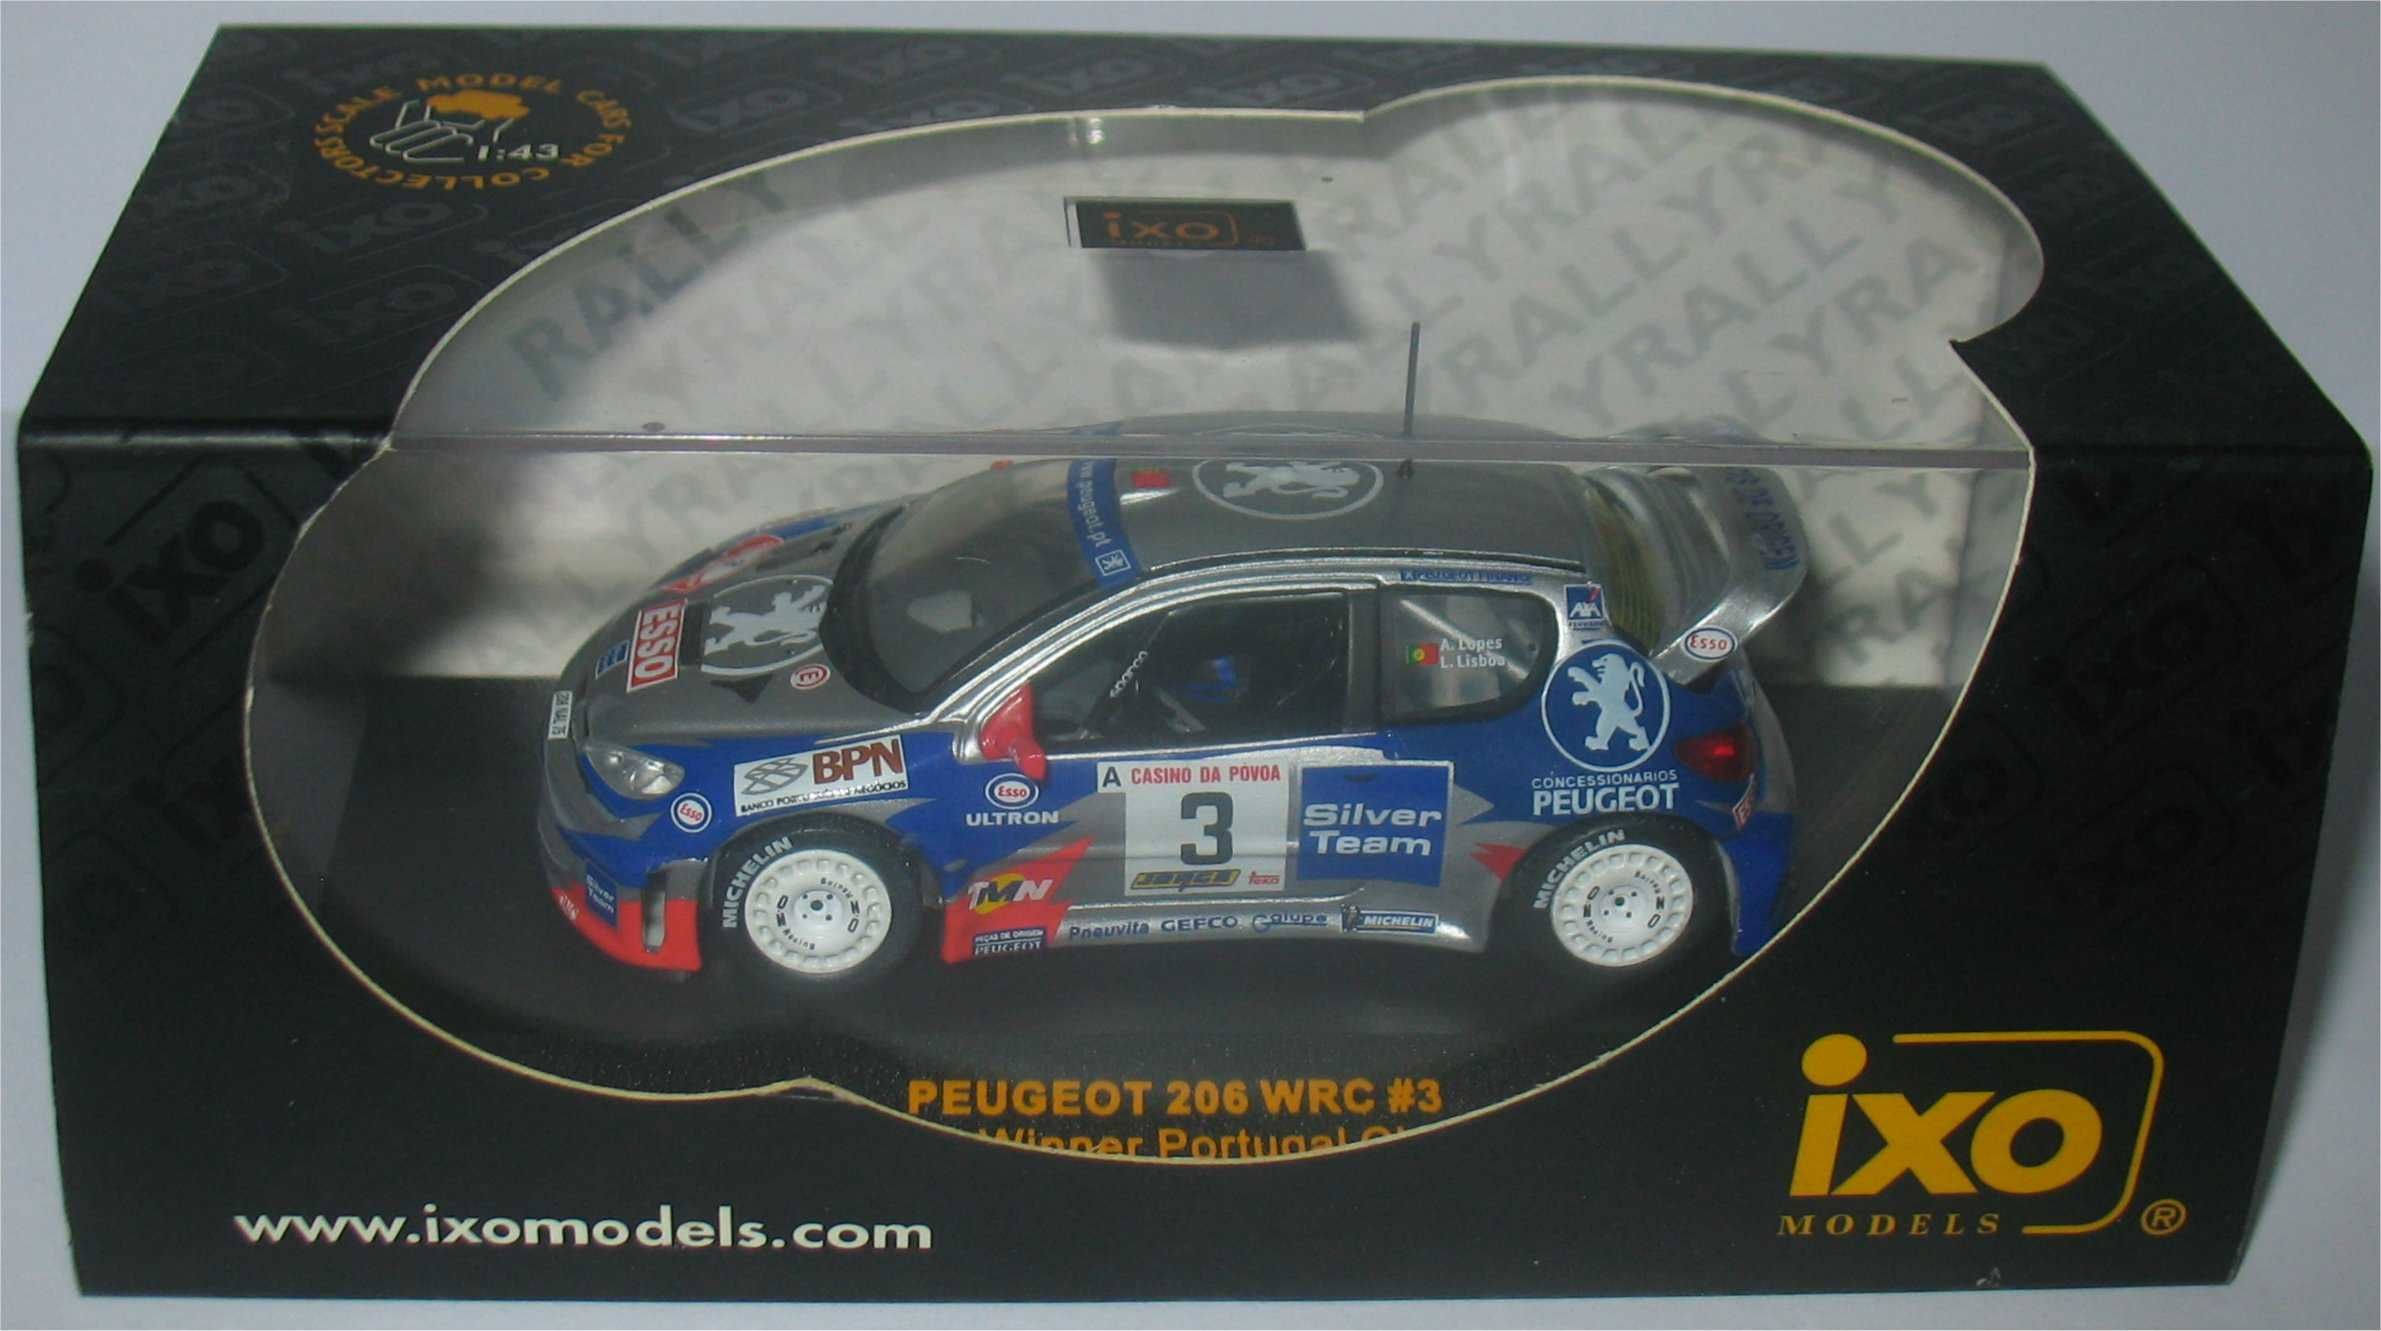 Peugeot 206 WRC - Vencedor Rally Casino da Póvoa 2001 - Adruzilo Lopes